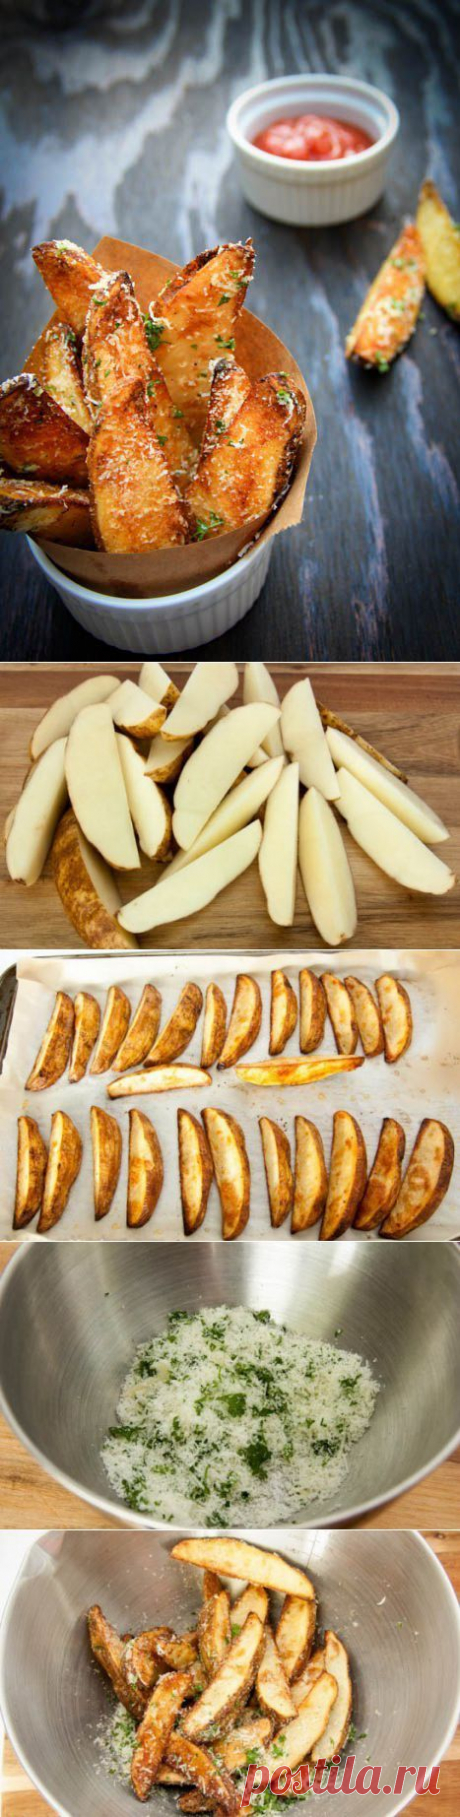 Запеченные картофельные дольки